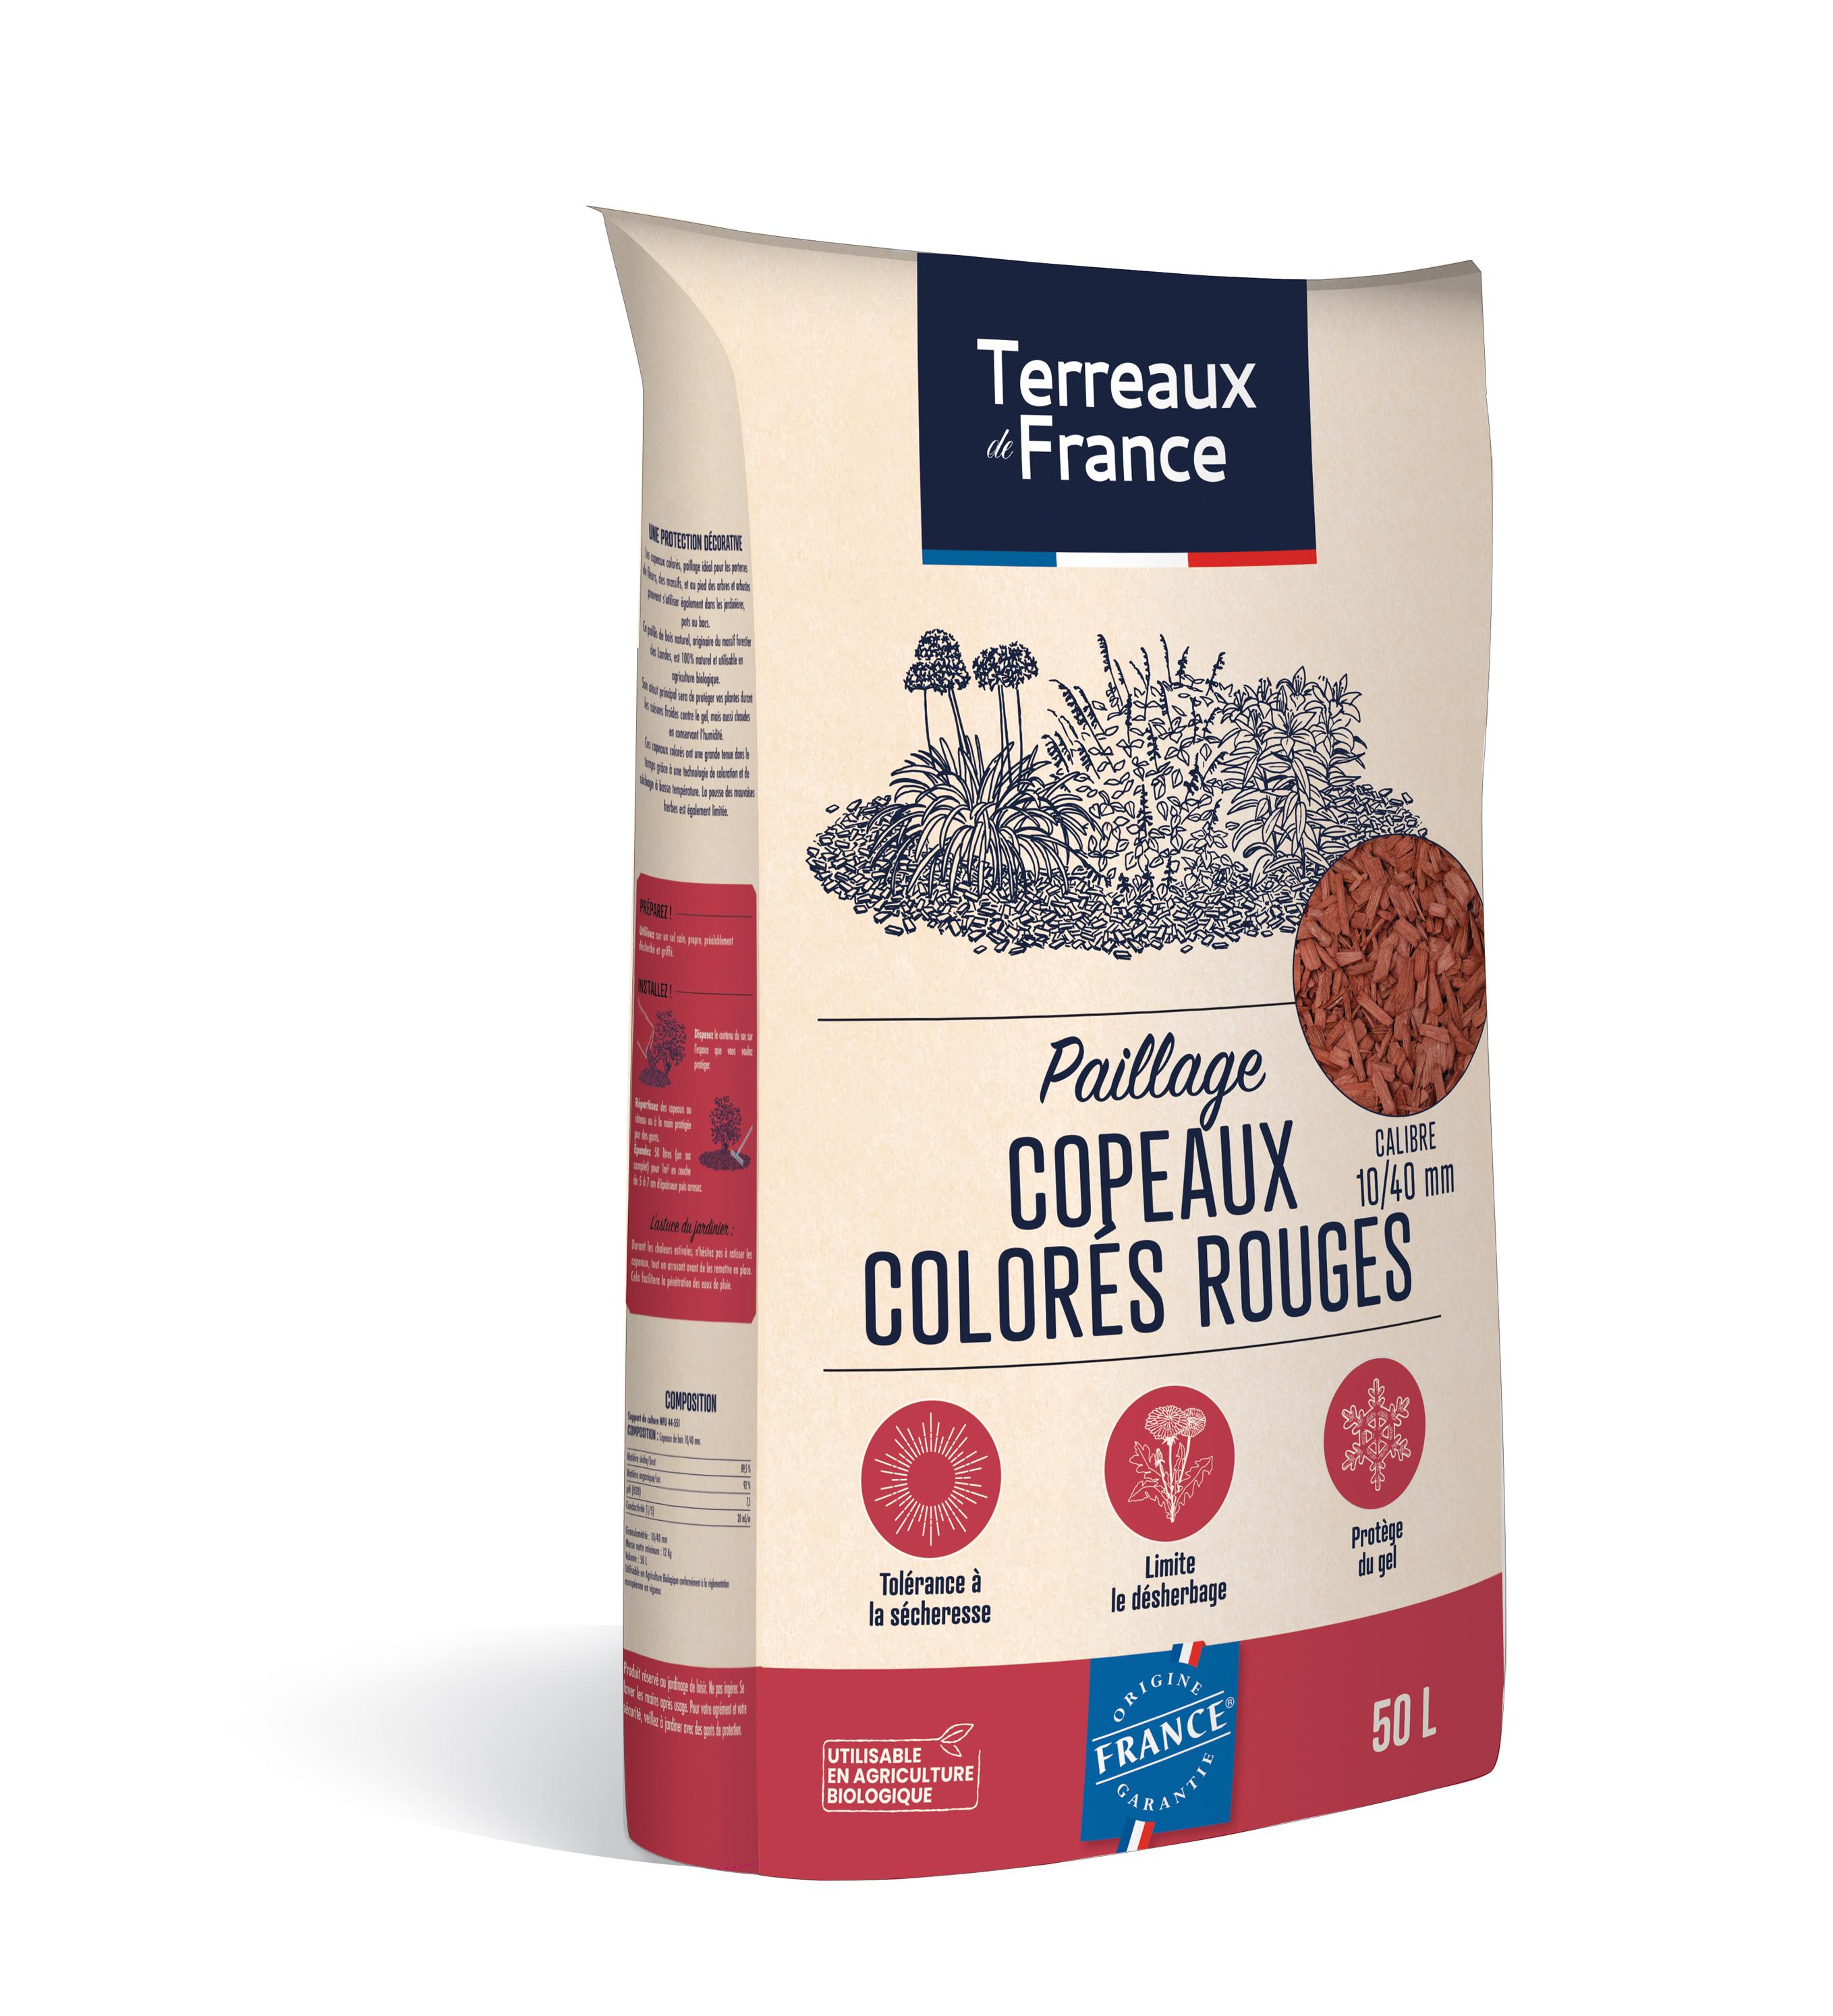 Paillage copeaux colorés rouges de la marque Terreaux de France 